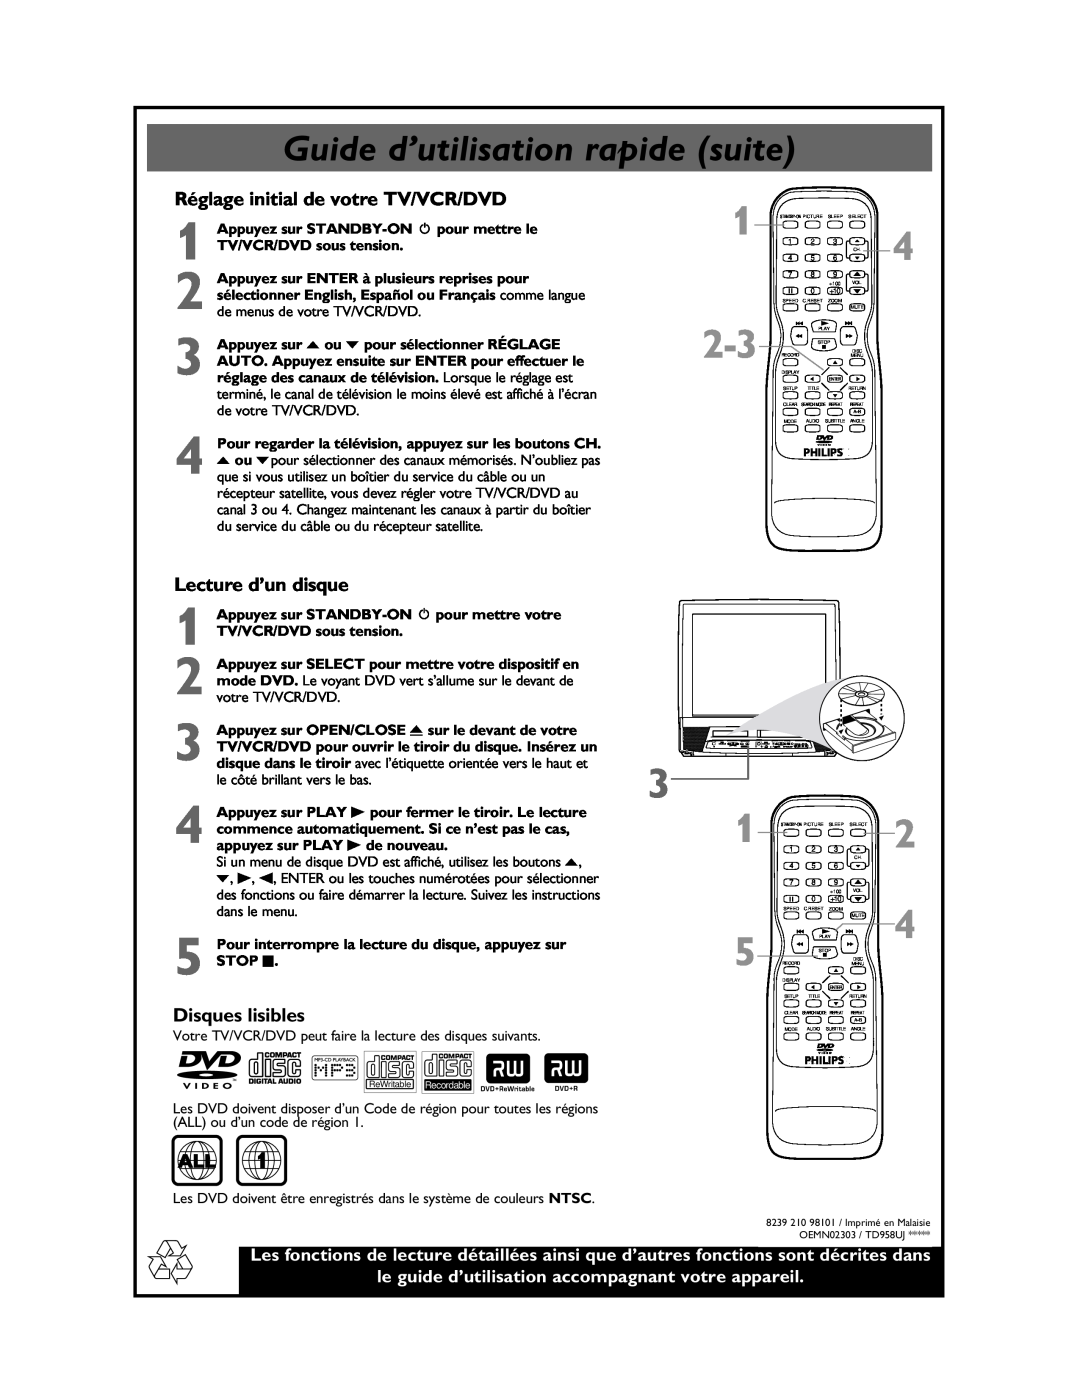 Philips 27DVCR55S manual Guide d’utilisation rapide suite, Réglage initial de votre TV/VCR/DVD, Lecture d’un disque 